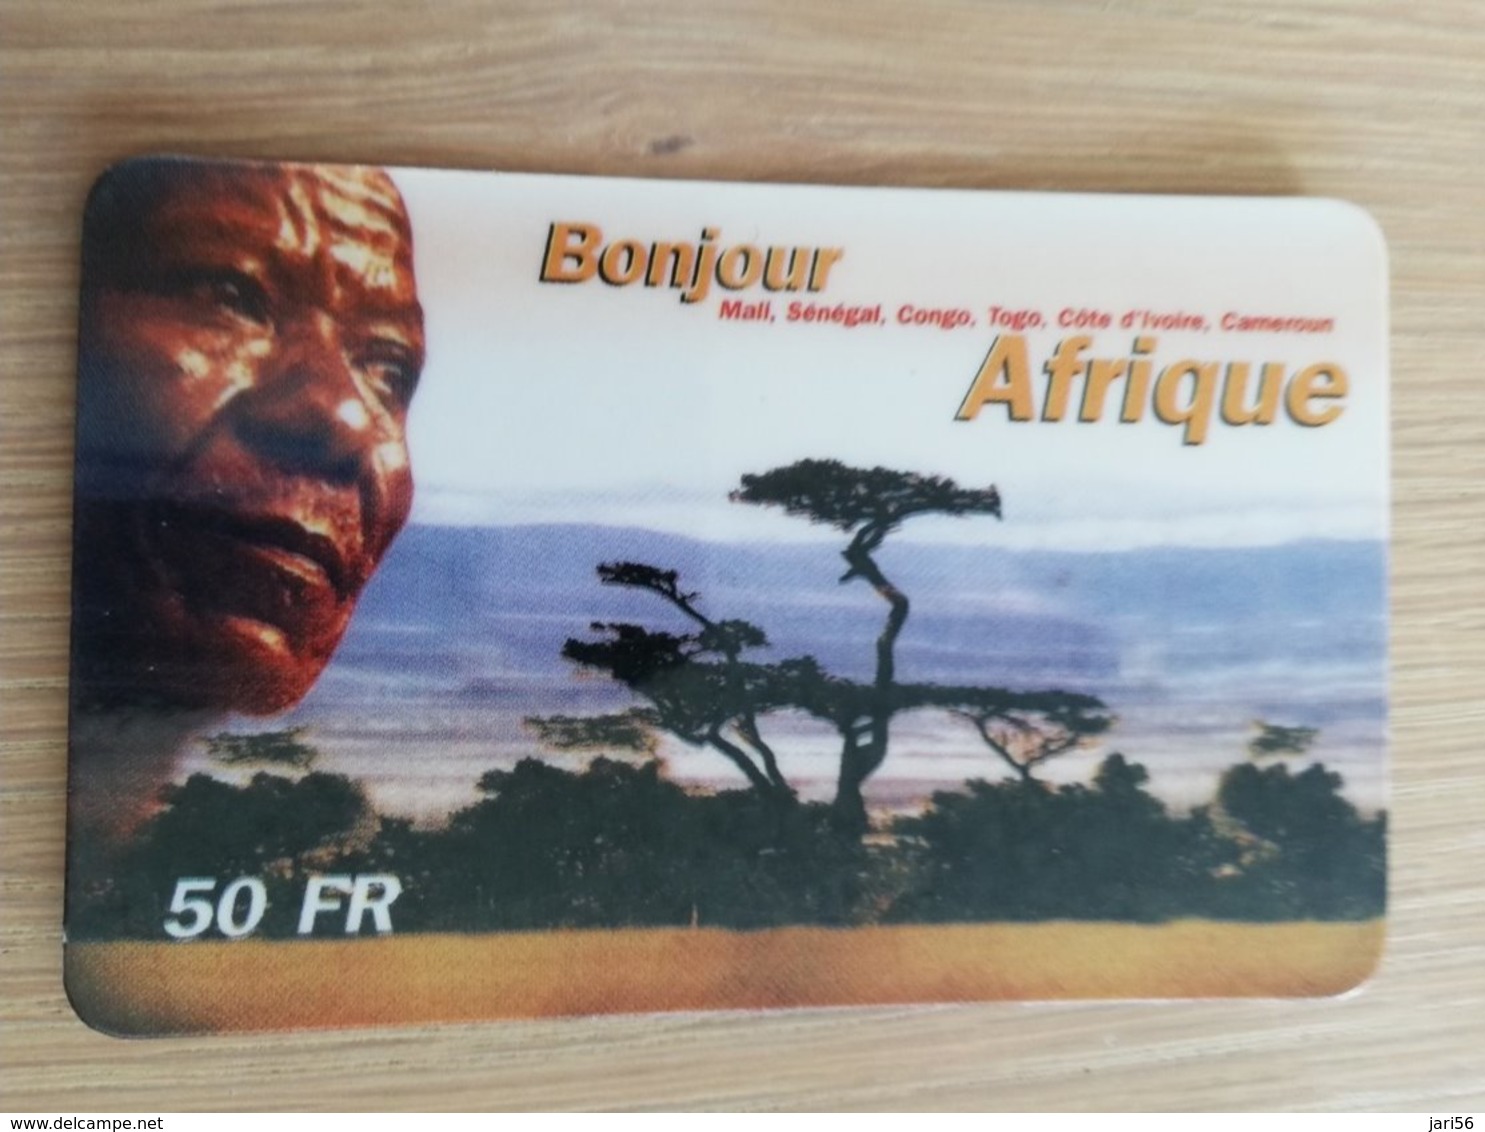 FRANCE/FRANKRIJK  50 FF BONJOUR AFRIQUE    PREPAID  USED    ** 1464** - Nachladekarten (Handy/SIM)